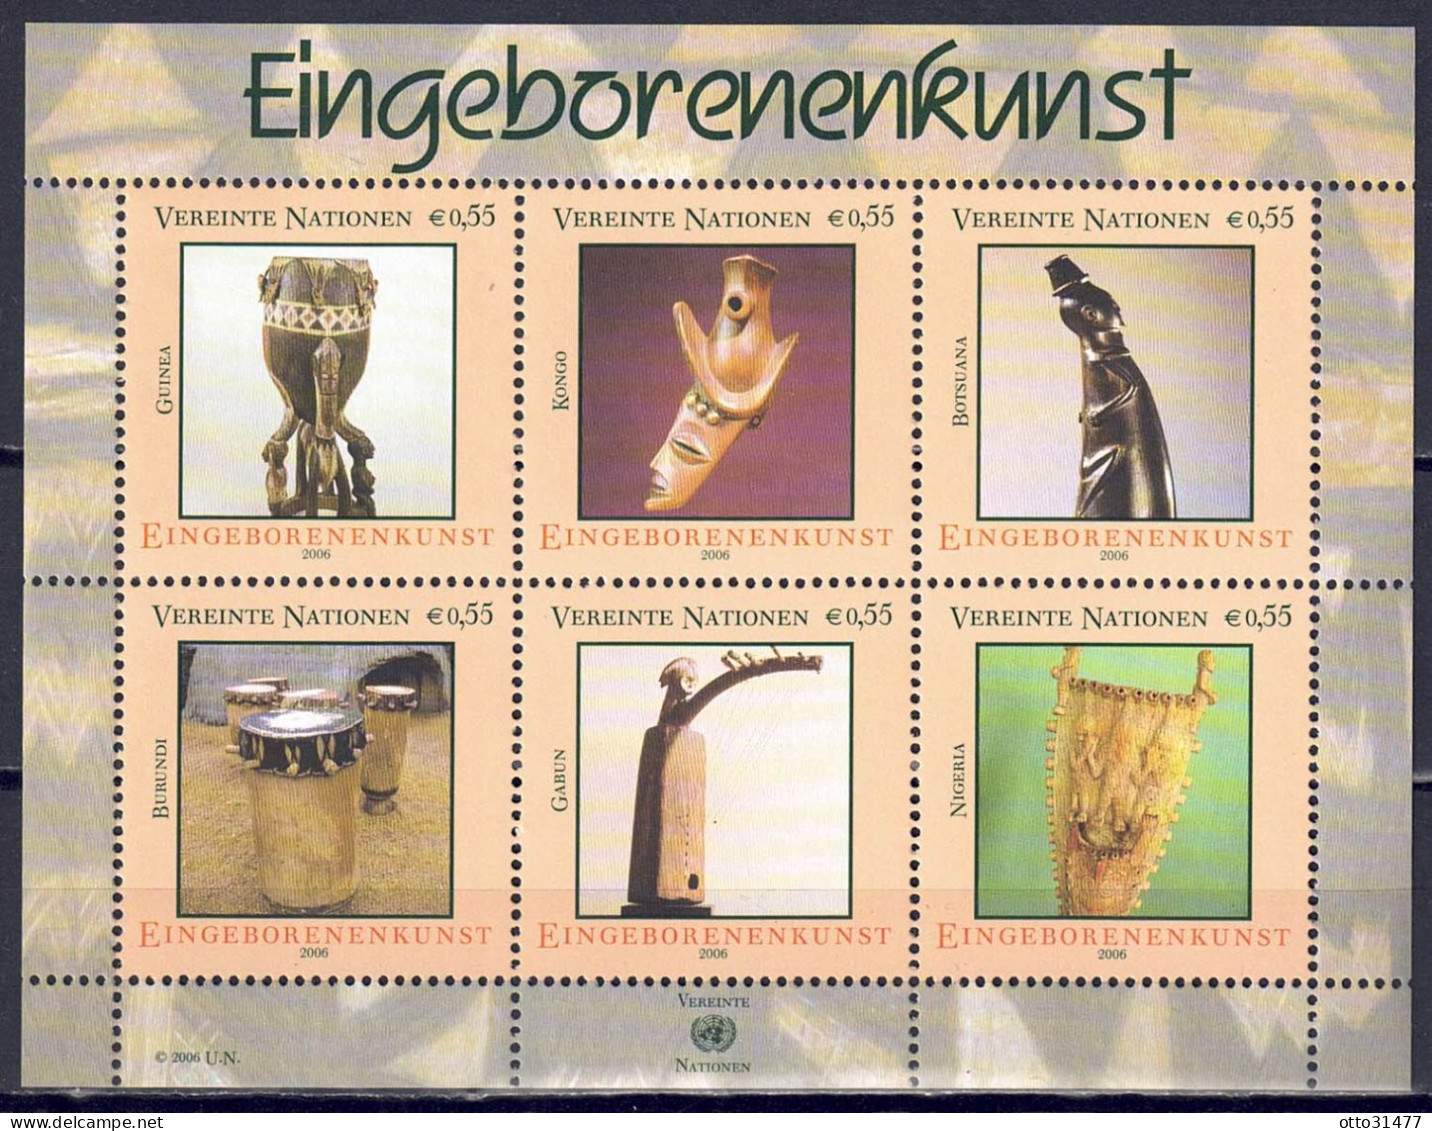 UNO Wien 2006 - Eingeborenenkunst (III), Block 20, Postfrisch ** / MNH - Neufs